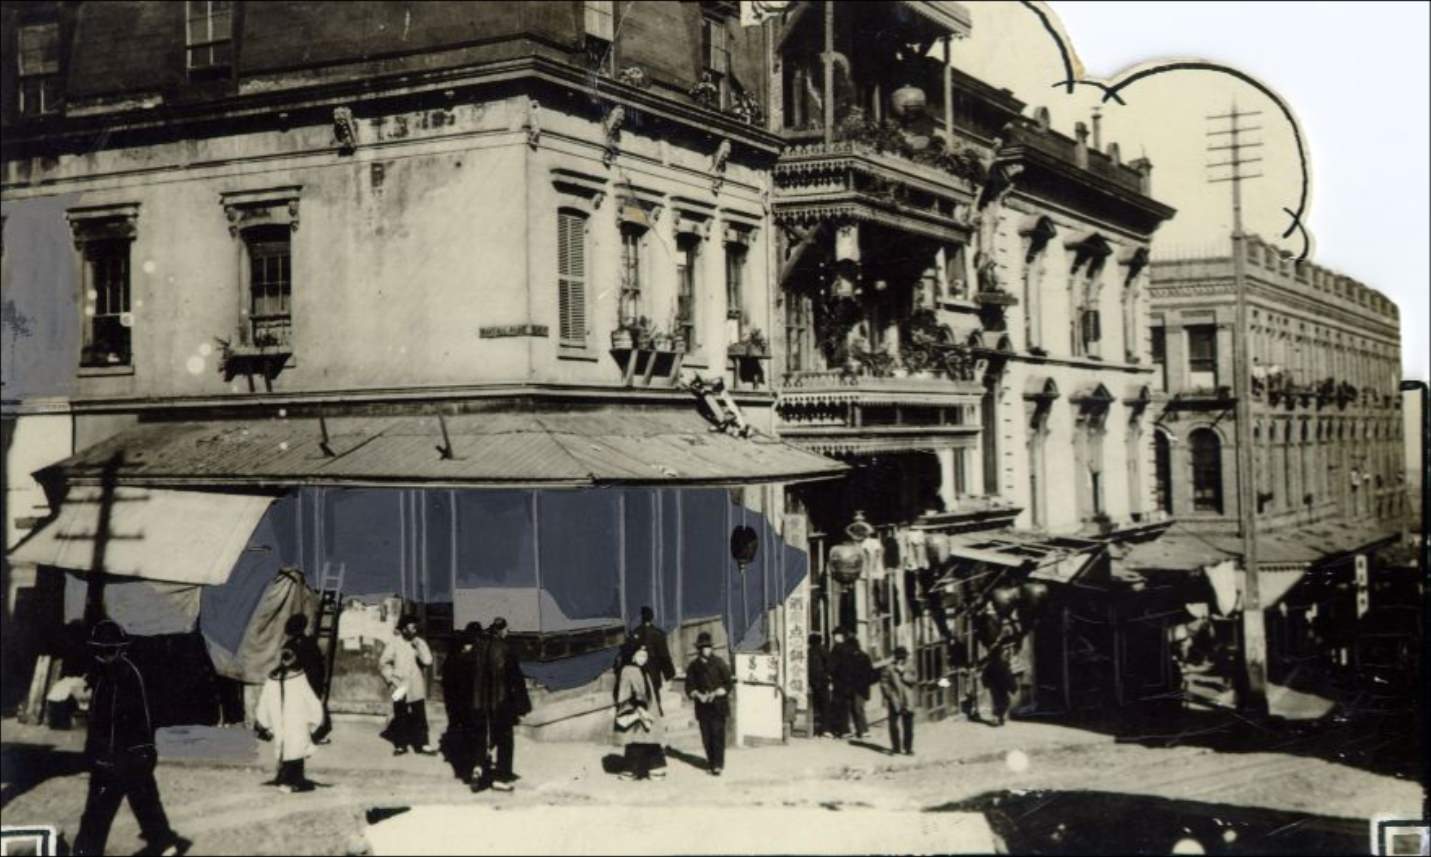 Grant Avenue in Chinatown, 1902